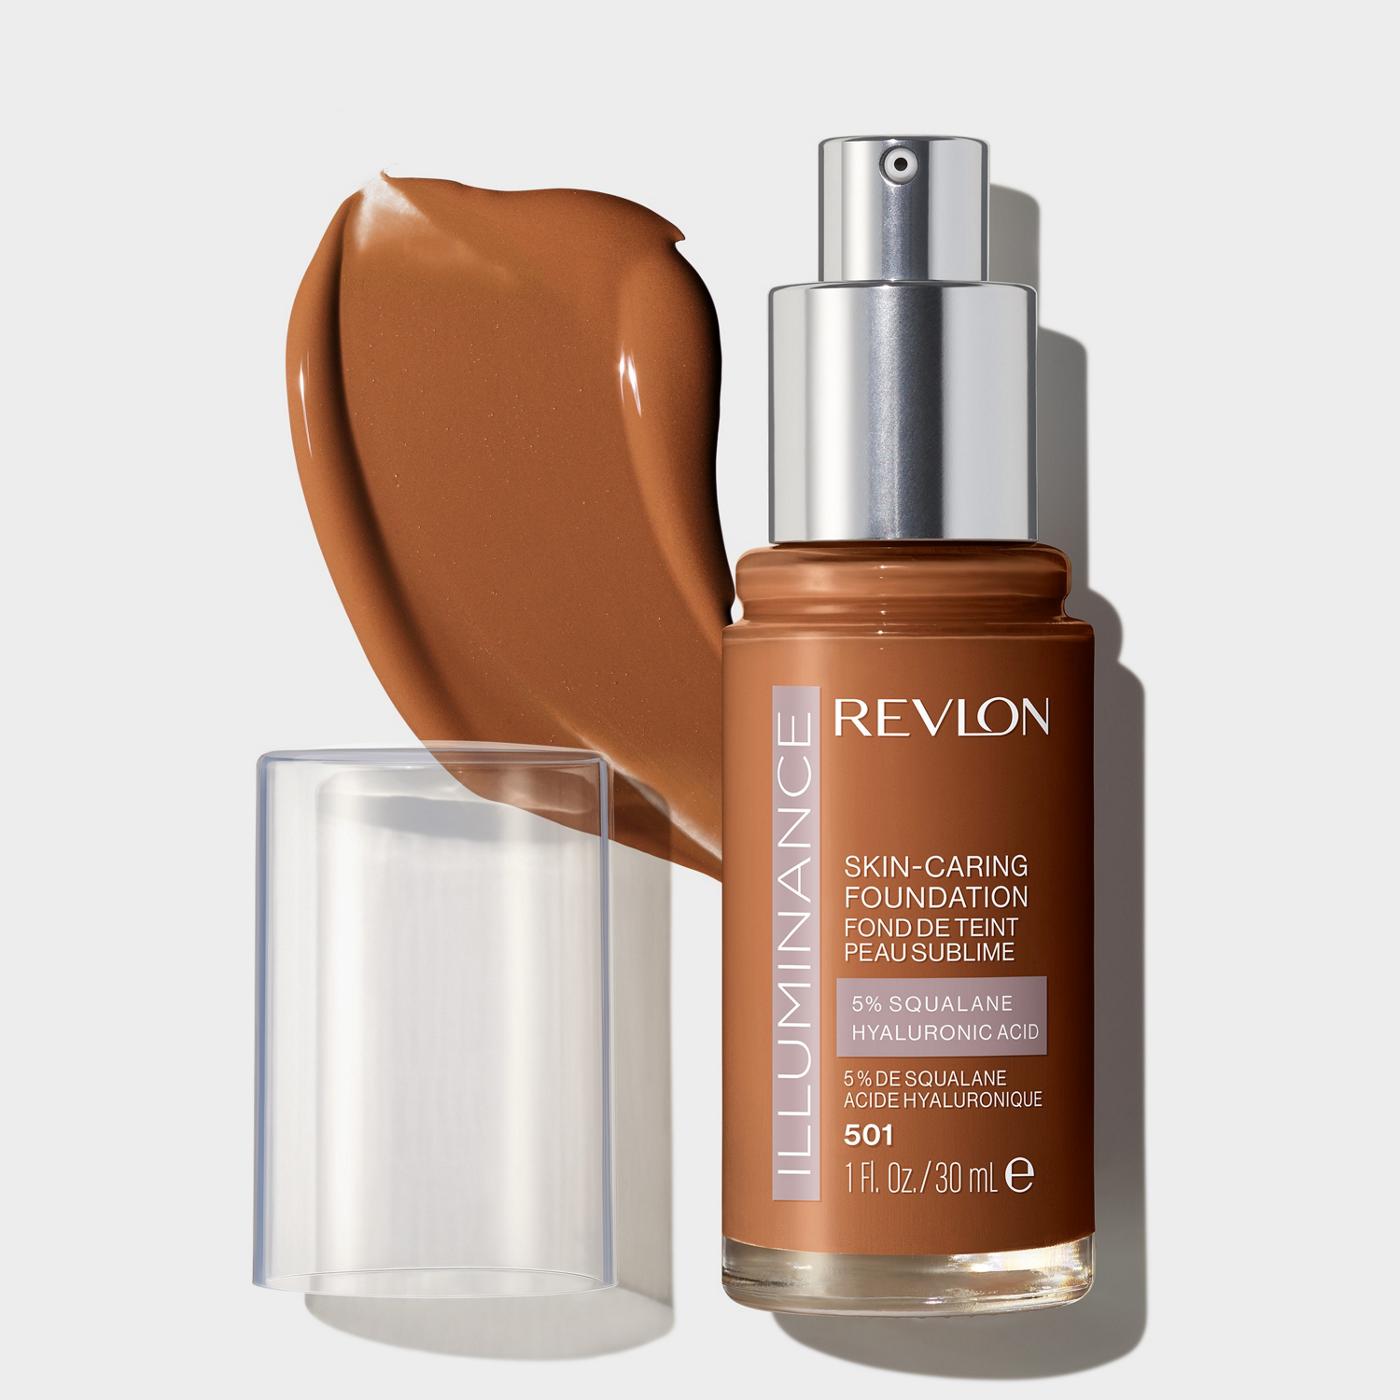 Revlon Illuminance Skin-Caring Foundation - Toast Caramel; image 2 of 3